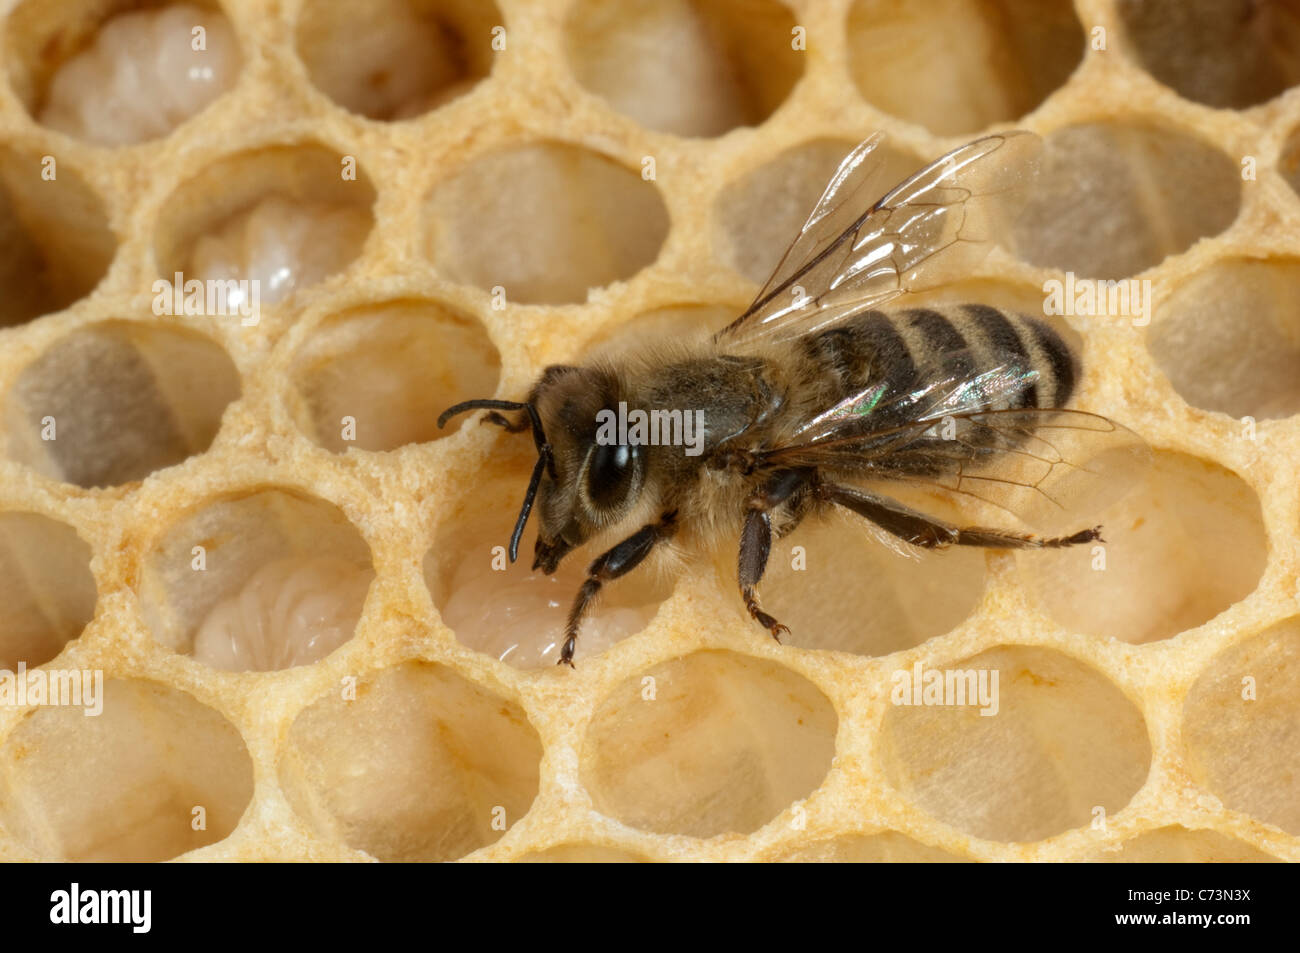 L'abeille européenne, l'abeille à miel (Apis mellifera, Apis mellifica). L'alimentation des larves travailleur dans les cellules d'un rayon de miel. Banque D'Images